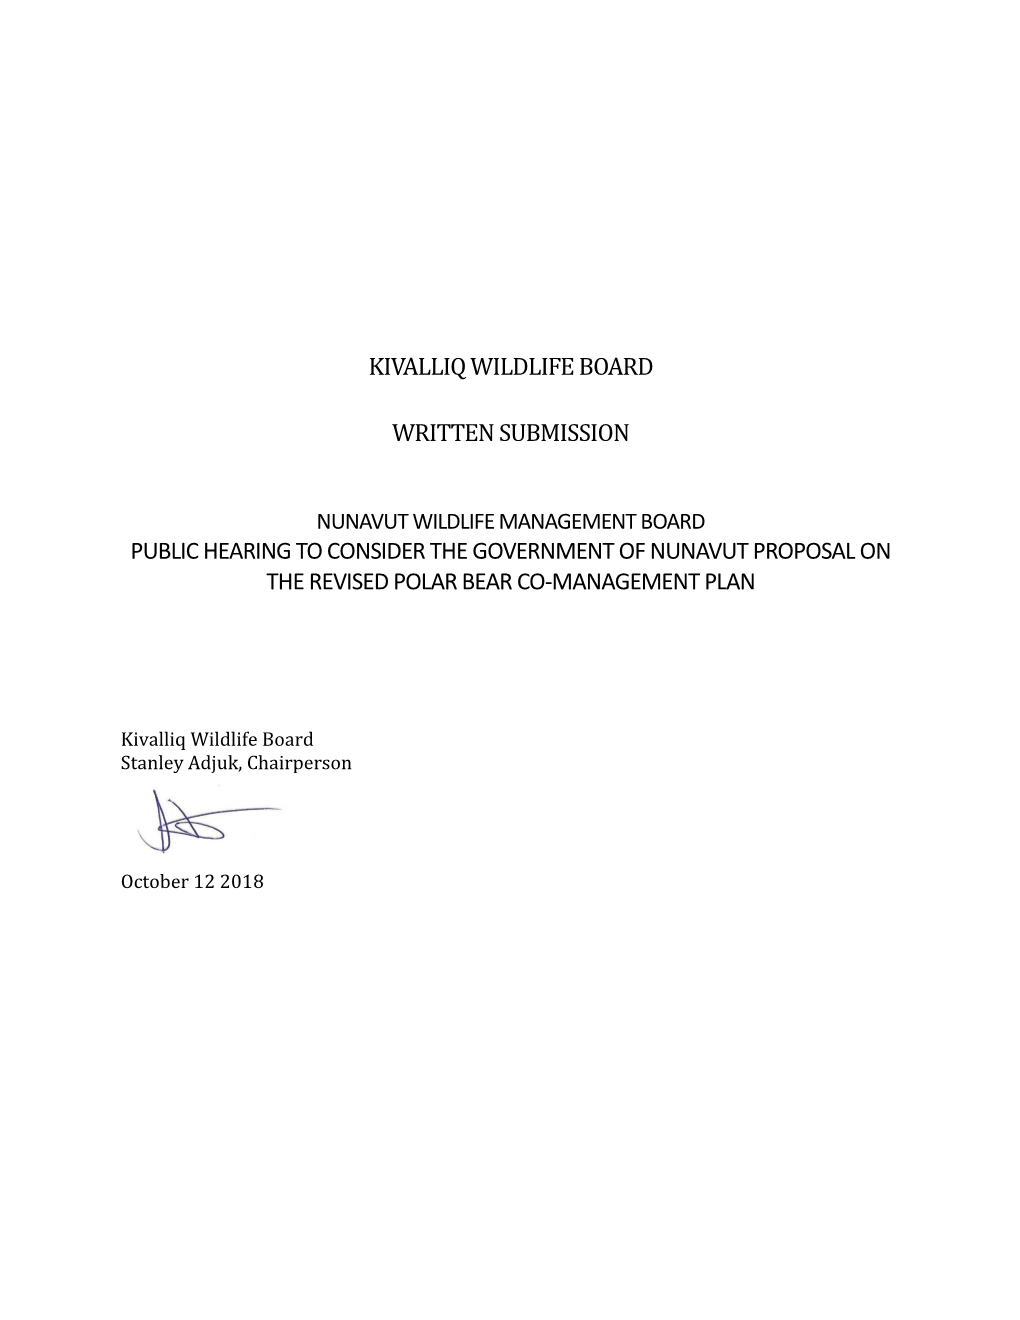 Kivalliq Wildlife Board Written Submission Public